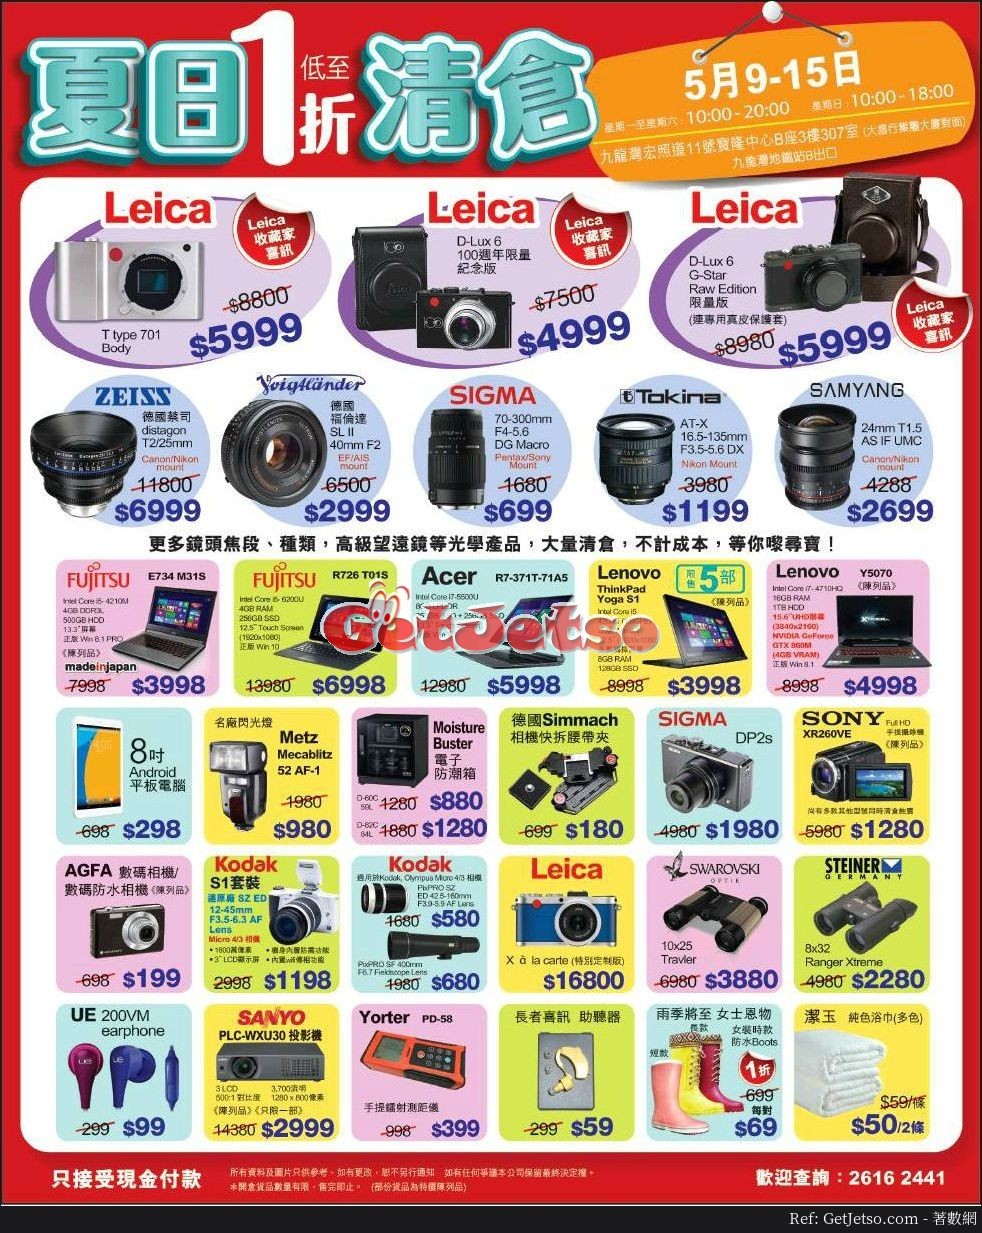 電腦數碼產品/Leica相機低至1折開倉優惠(17年5月18-22日)圖片1